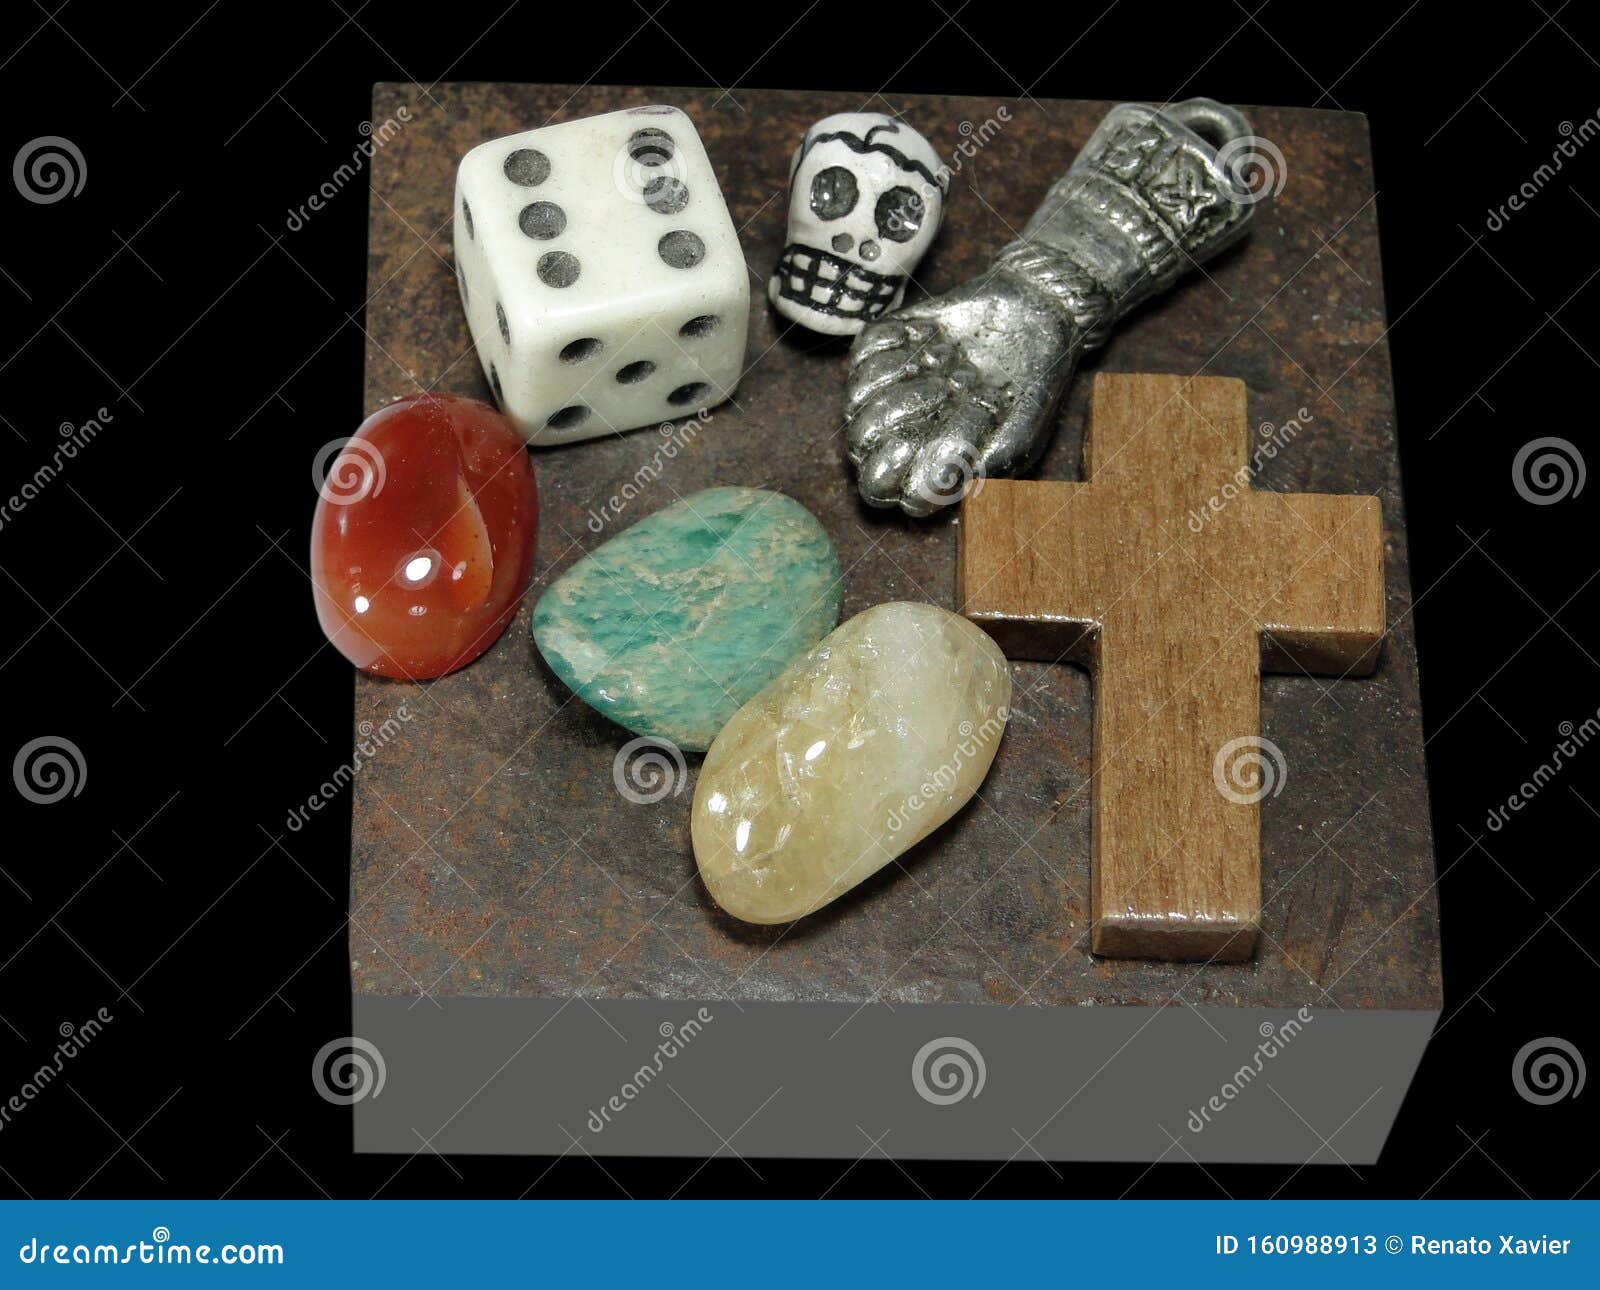 mesa mÃÂ ÃÂ ÃâÃÂ­stica com pedras, sÃÂ ÃÂ ÃâÃÂ­bolos e objetos xamÃÂ¢nicos.